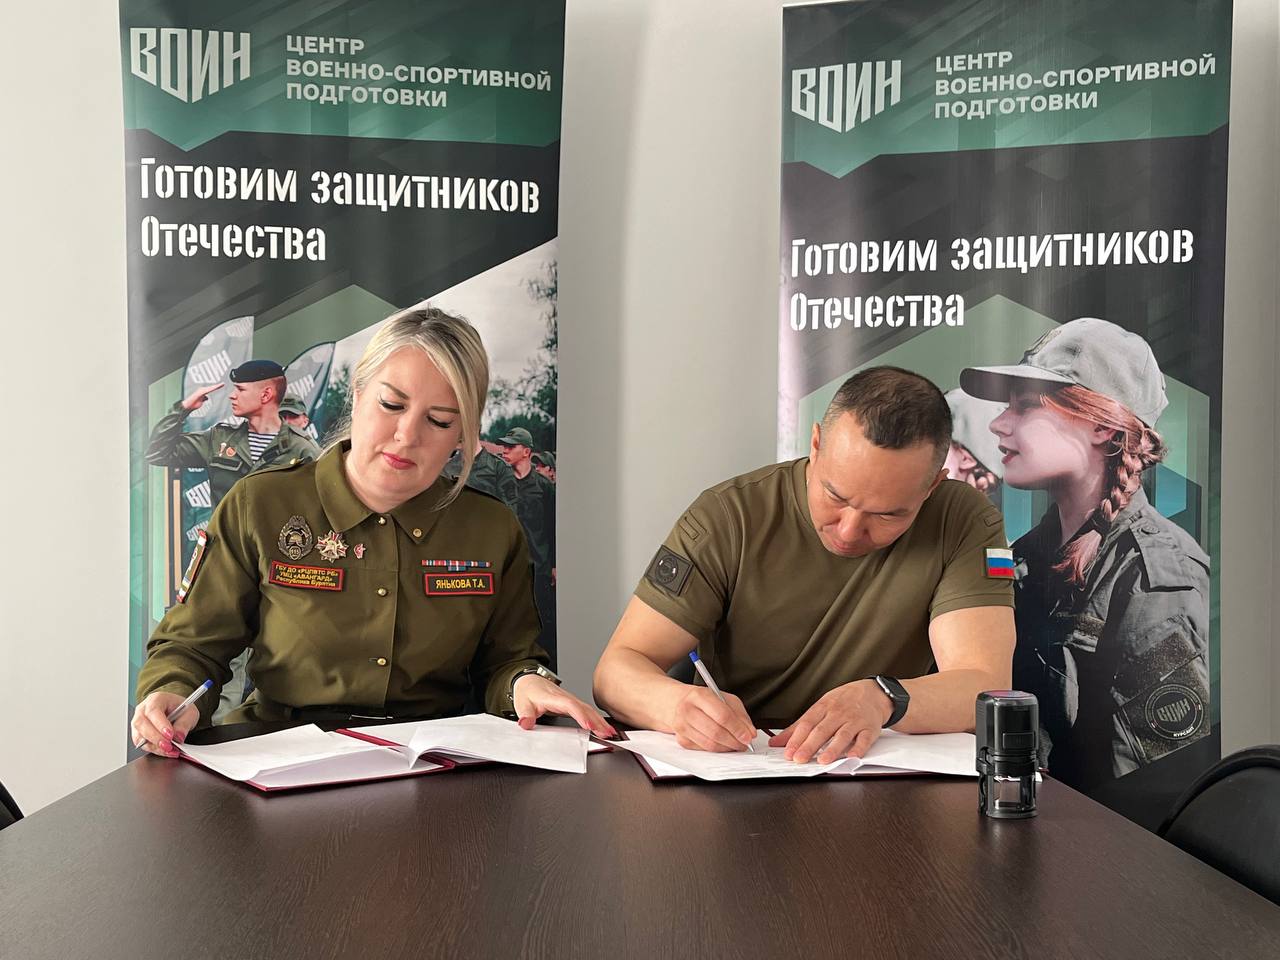 Фото В Бурятии военно-спортивной подготовки «Воин» и «Юнармия» подписали соглашение